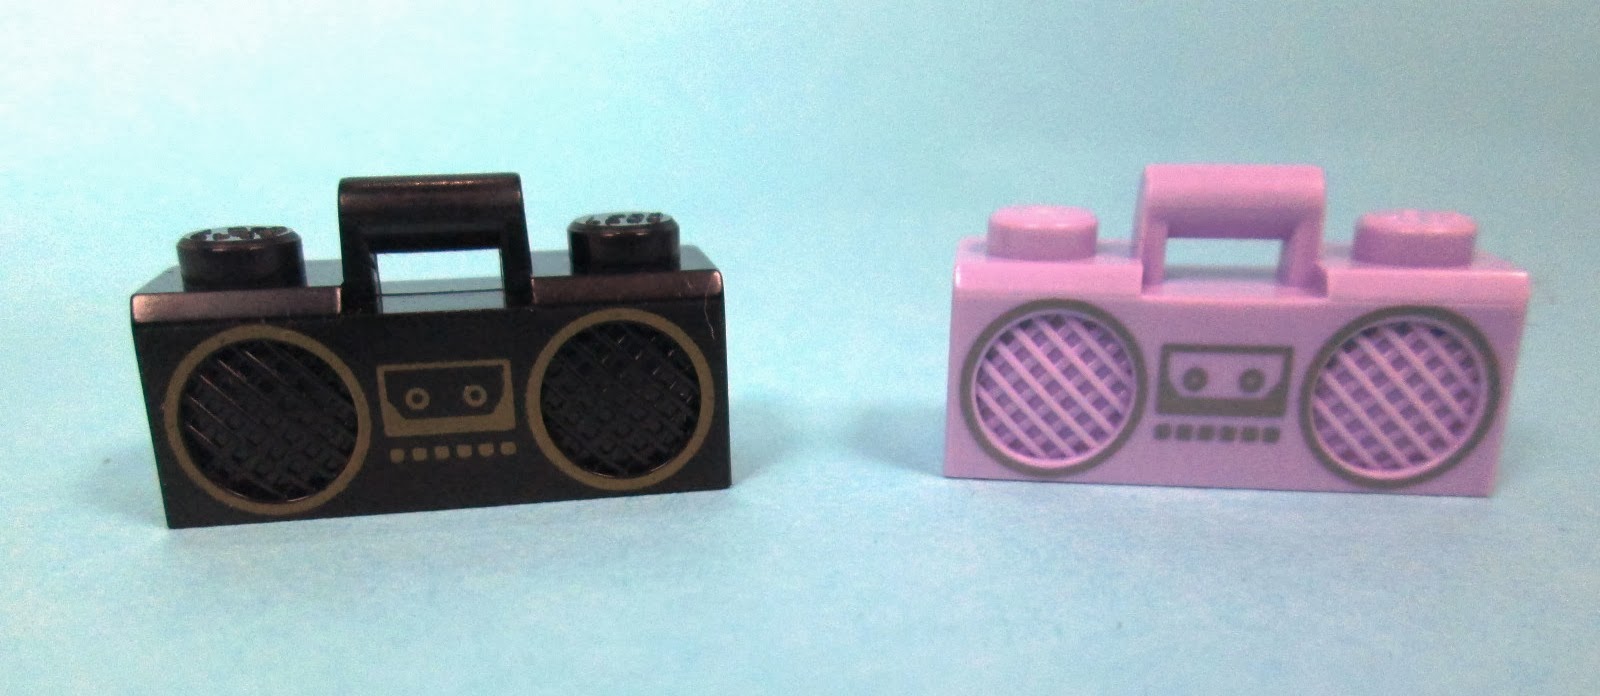 MOC LEGO Dia Mundial da Rádio - Olha o rádio! É pró menino e prá menina!